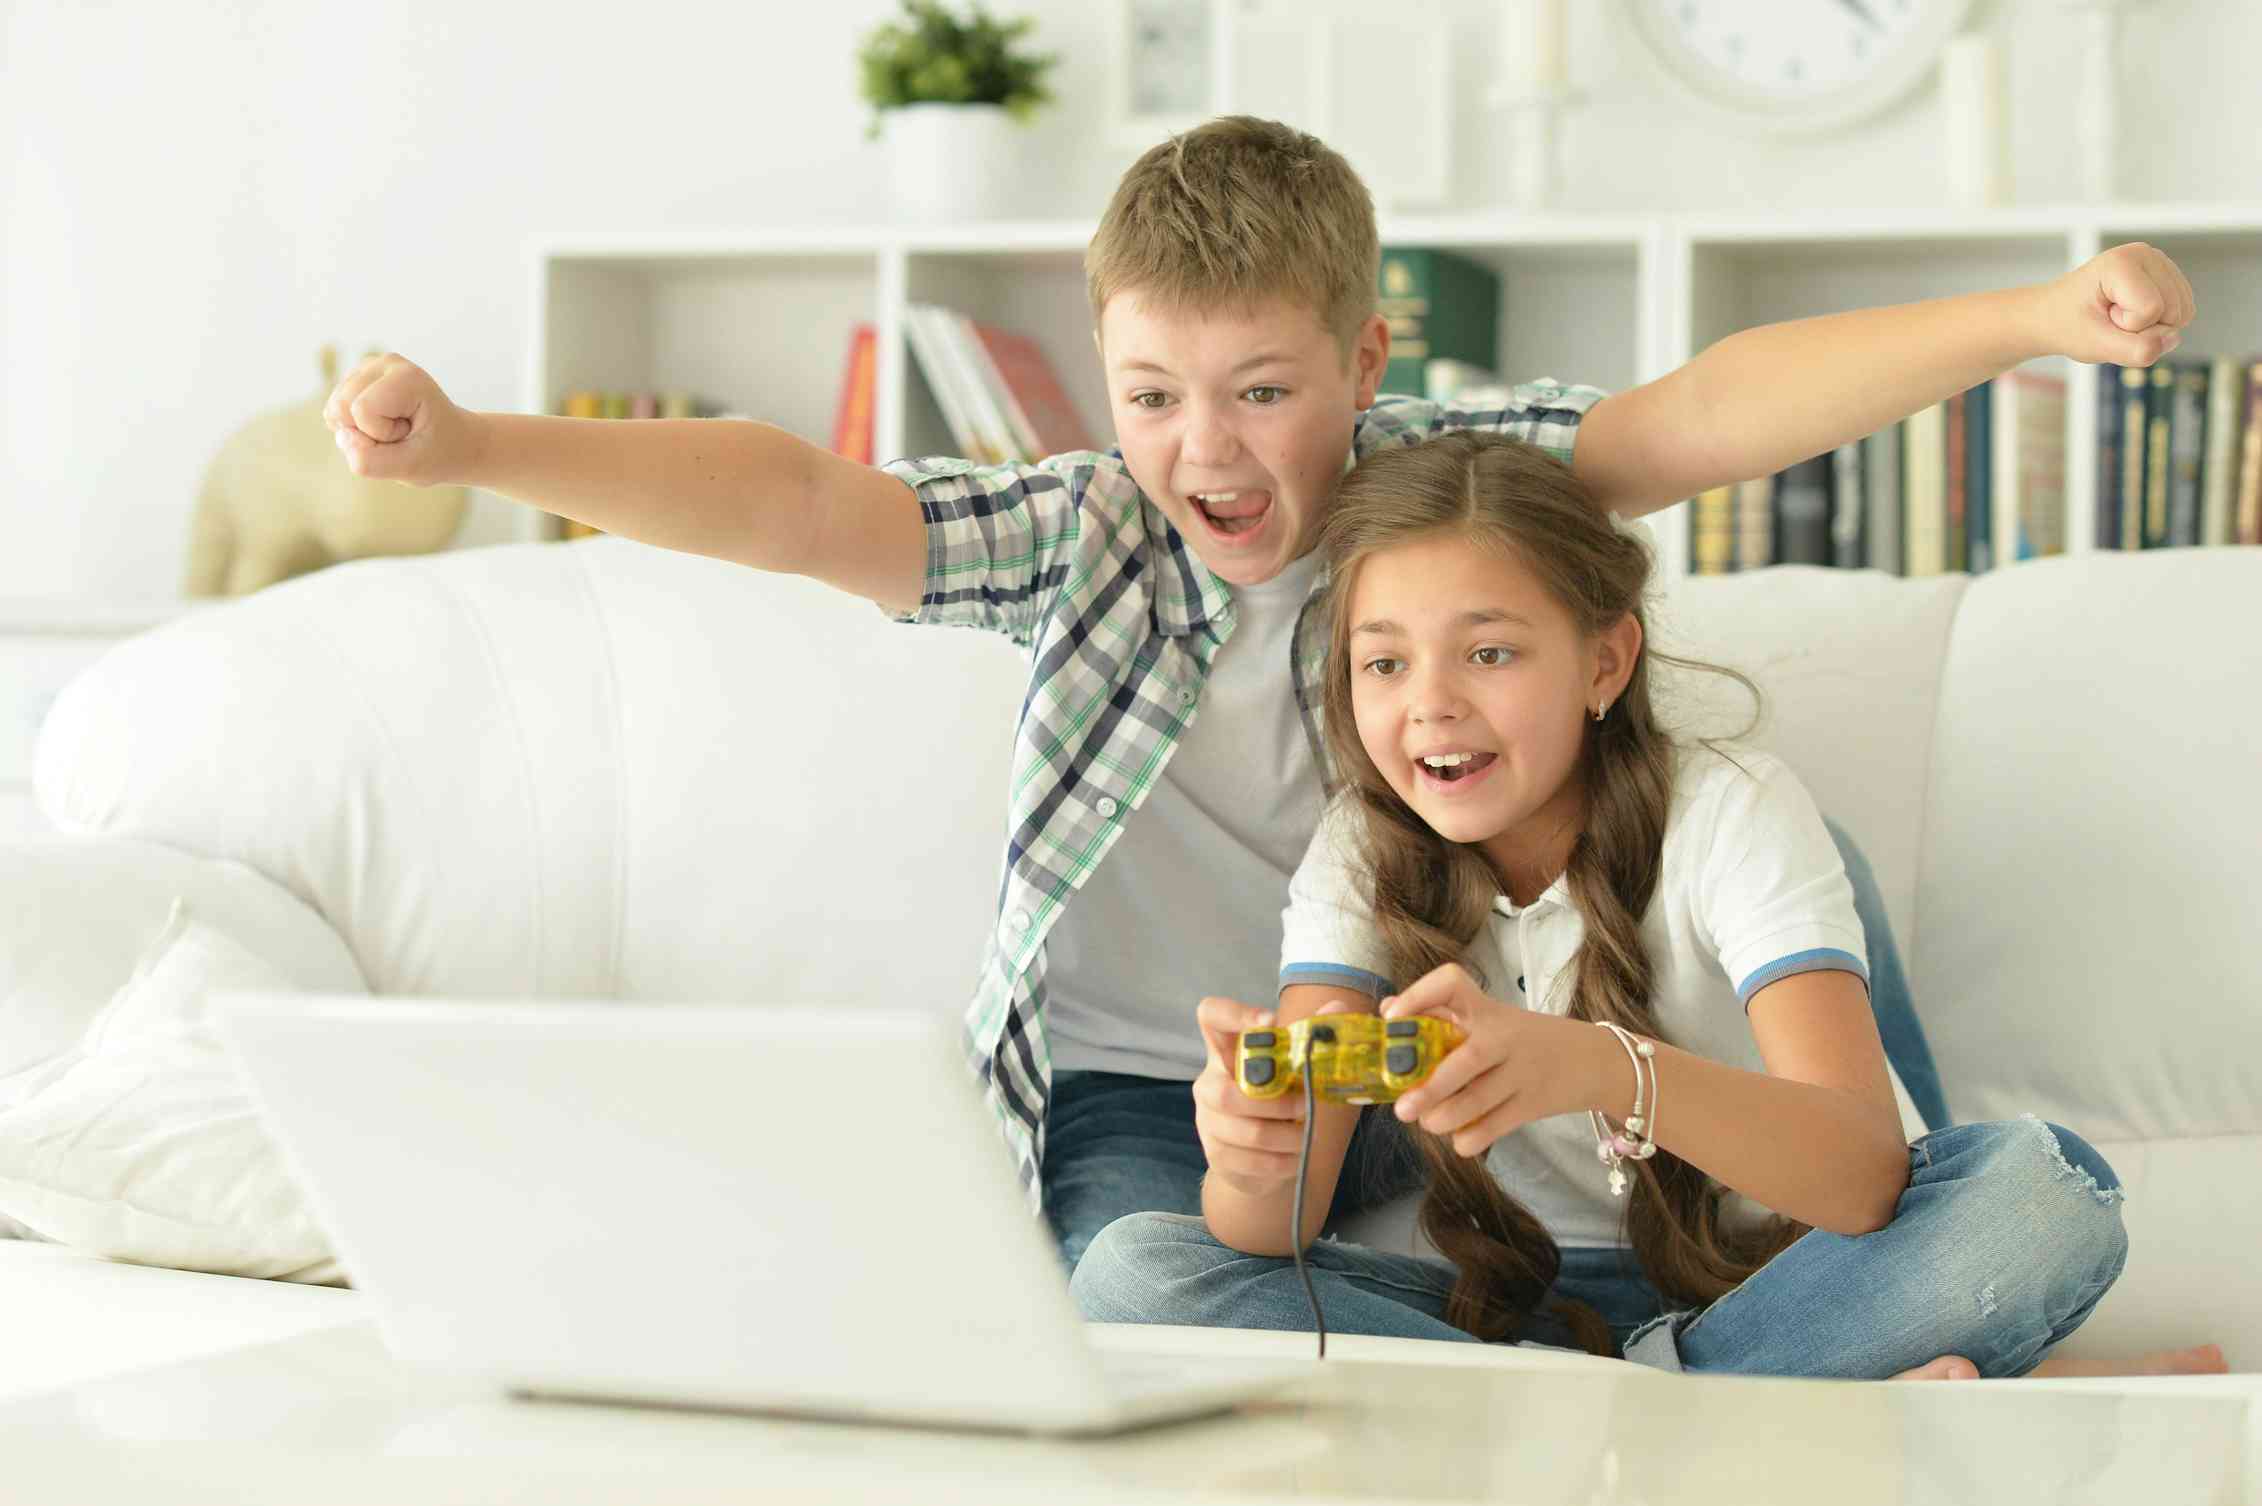 Sister and brother playing. Счастливый ребенок с джойстиком. Компьютерные игры отдаляют детей от родителей. Брат и сестра играют в игрушки на диване. Брат и сестра играют в компьютер.